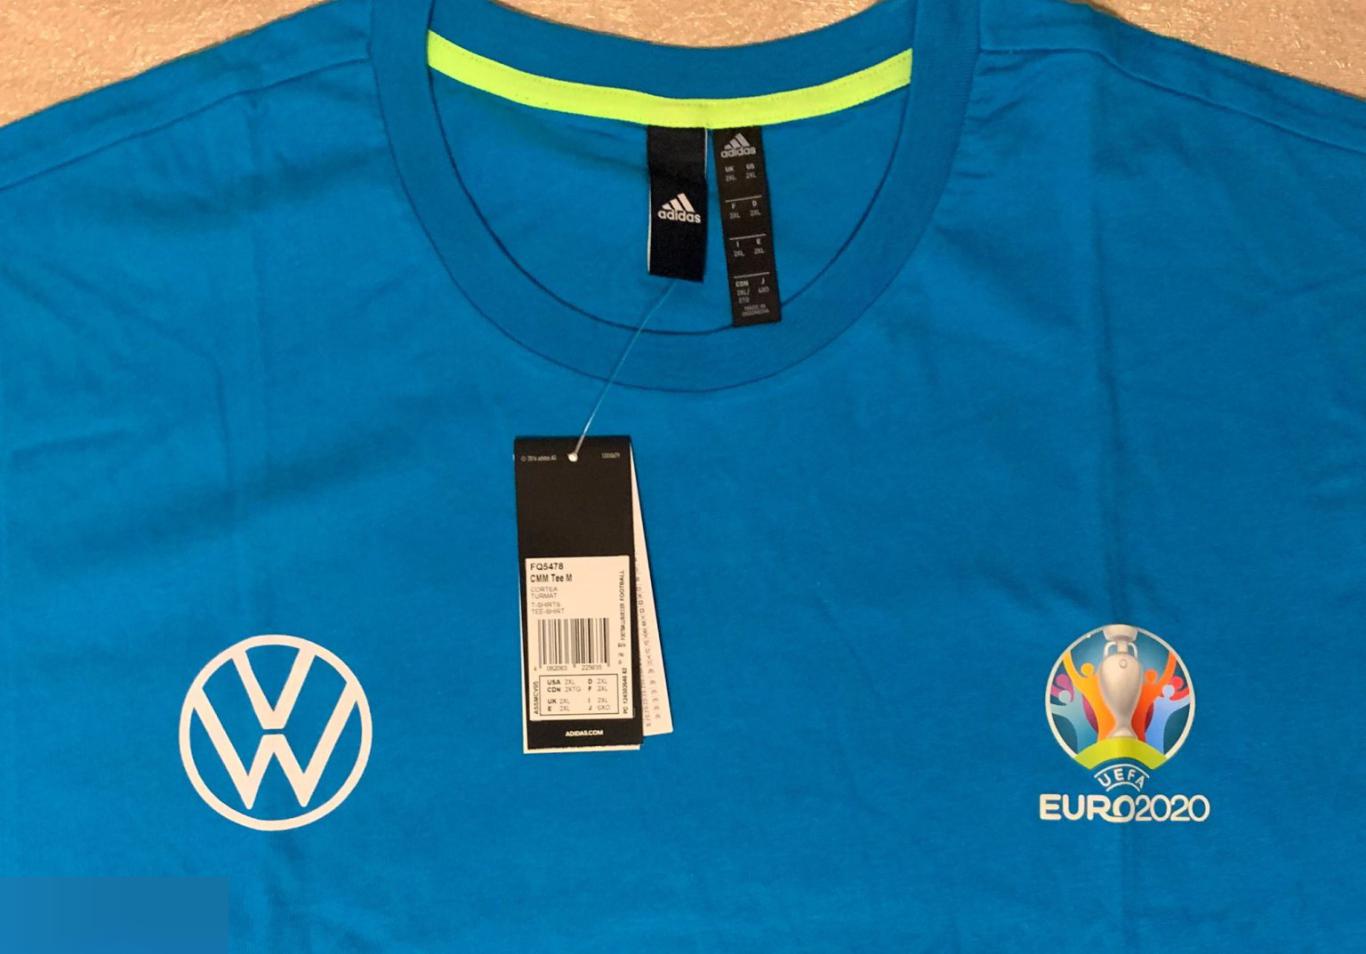 ГИГАНТ! Большие мужские футболки Adidas волонтера Евро 2020 (XXXL - XXXXL) 1